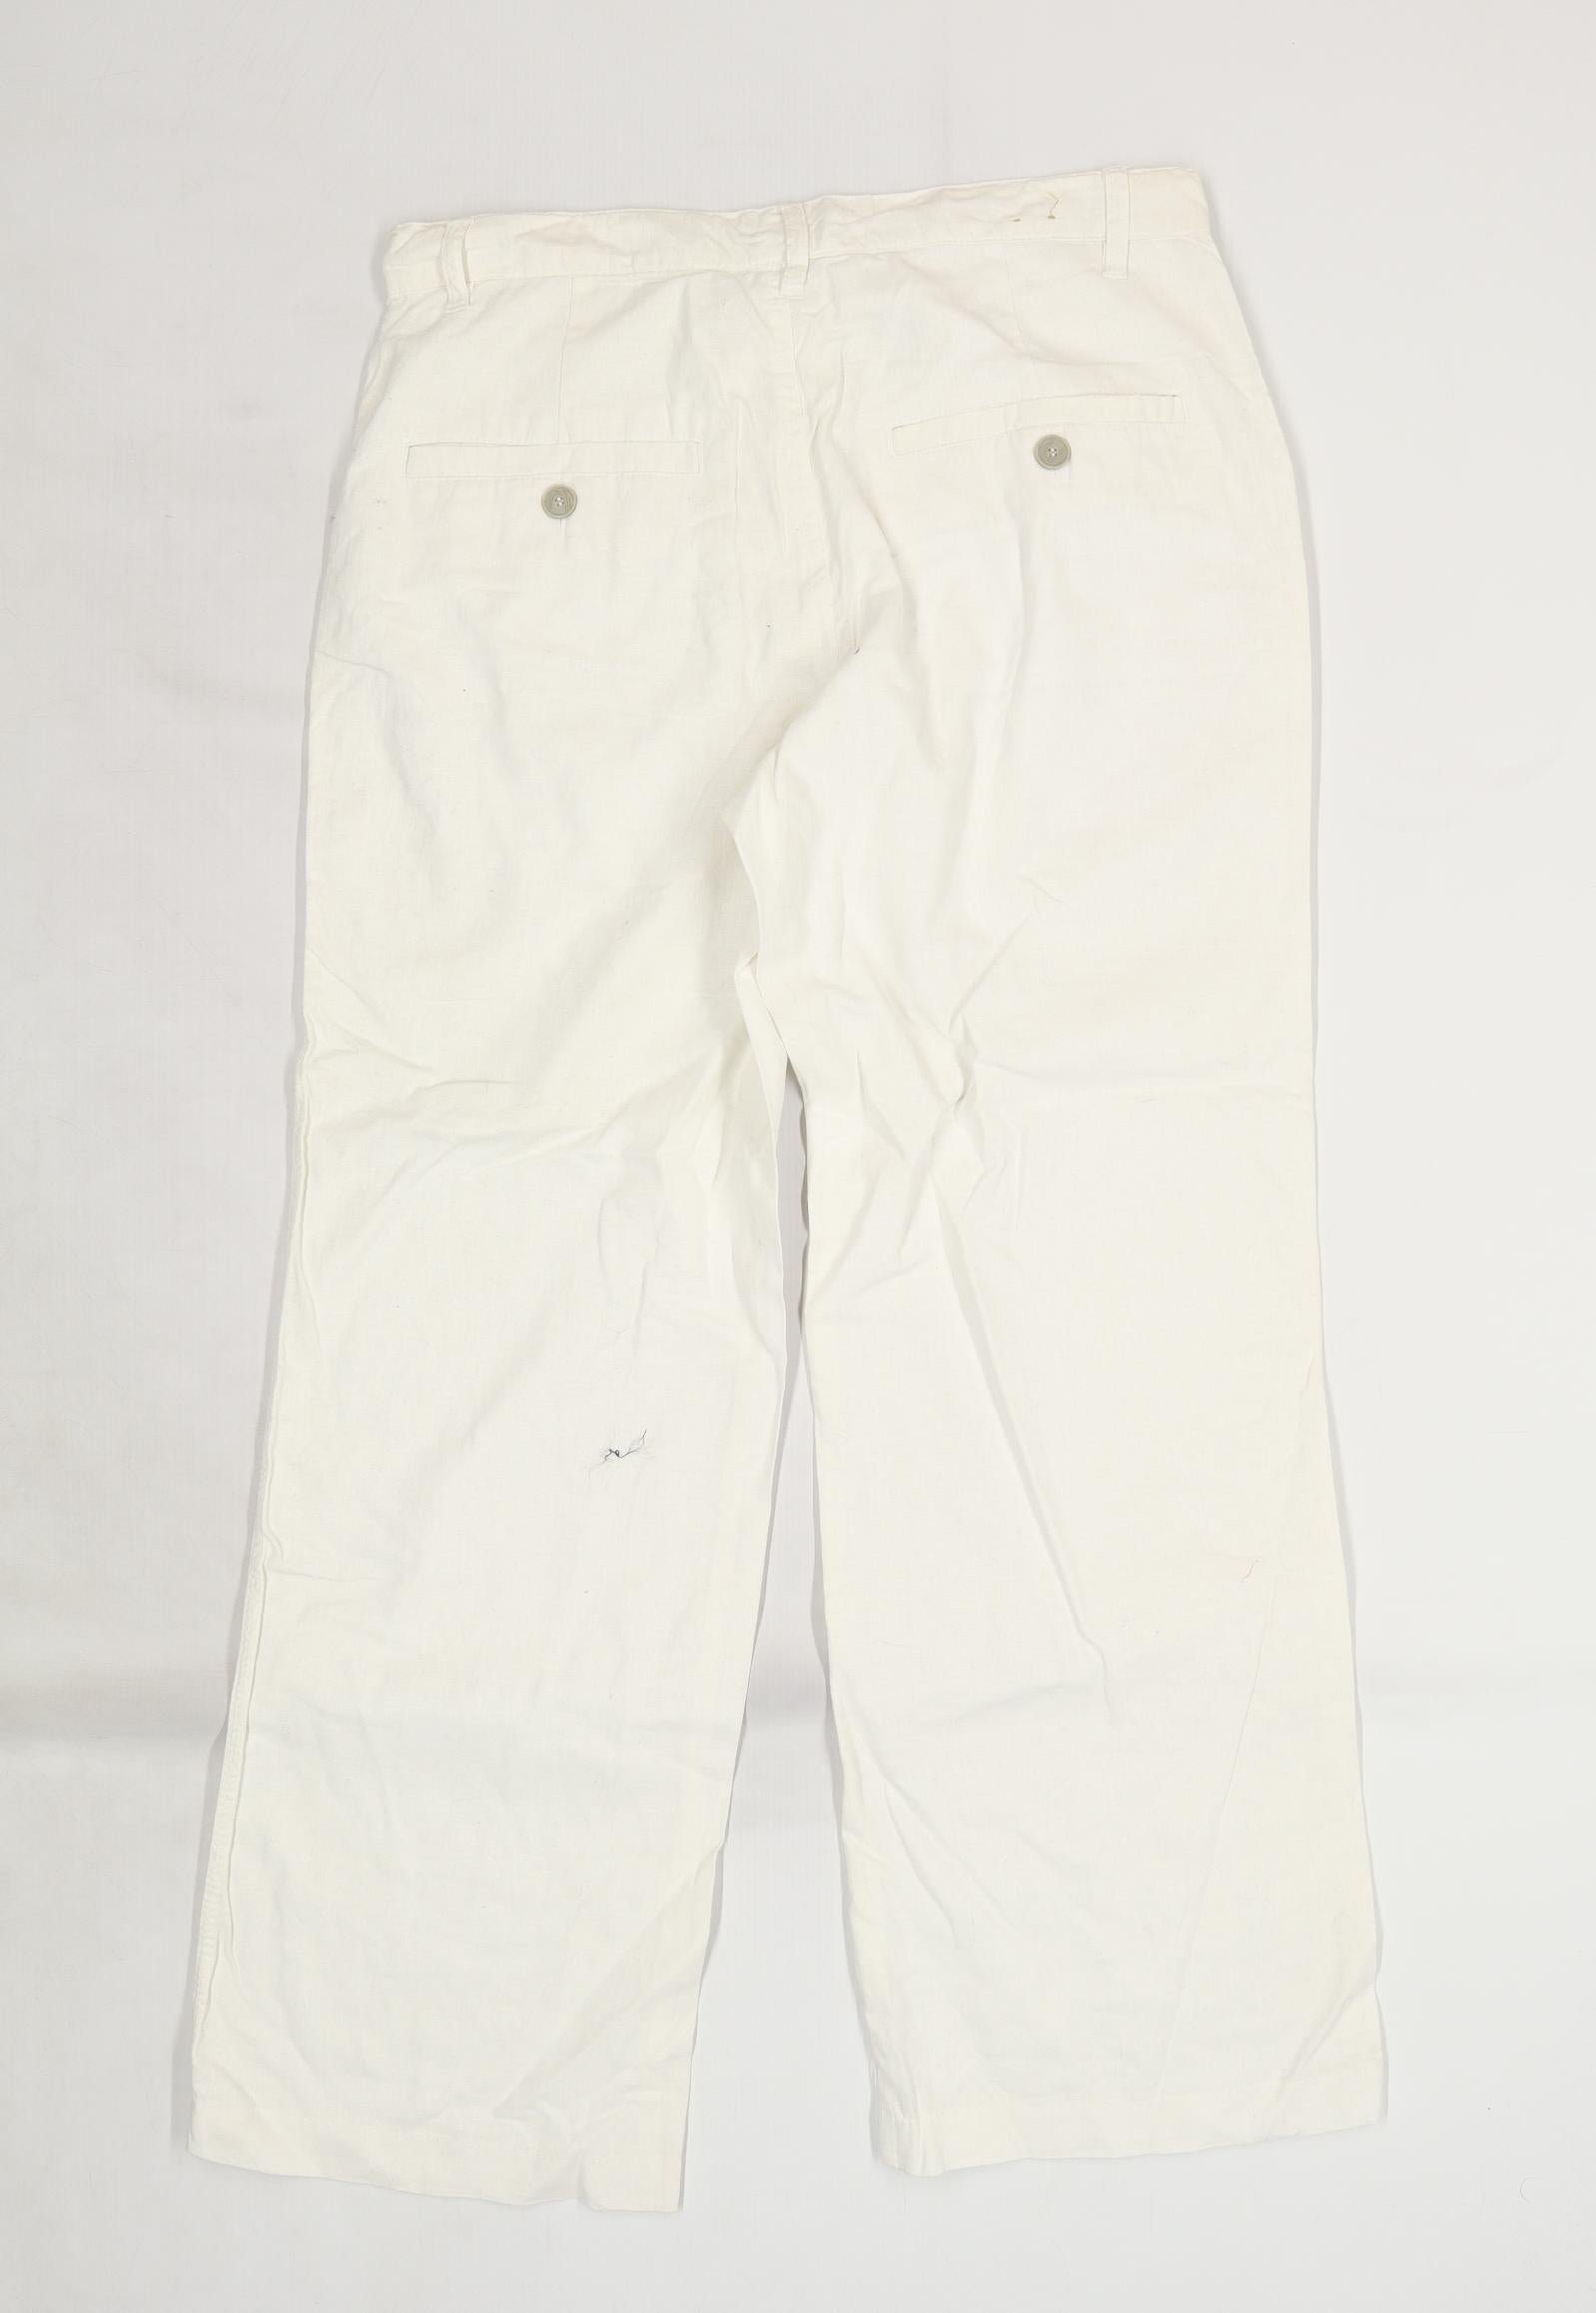 white linen trousers men - Lemon8 Search